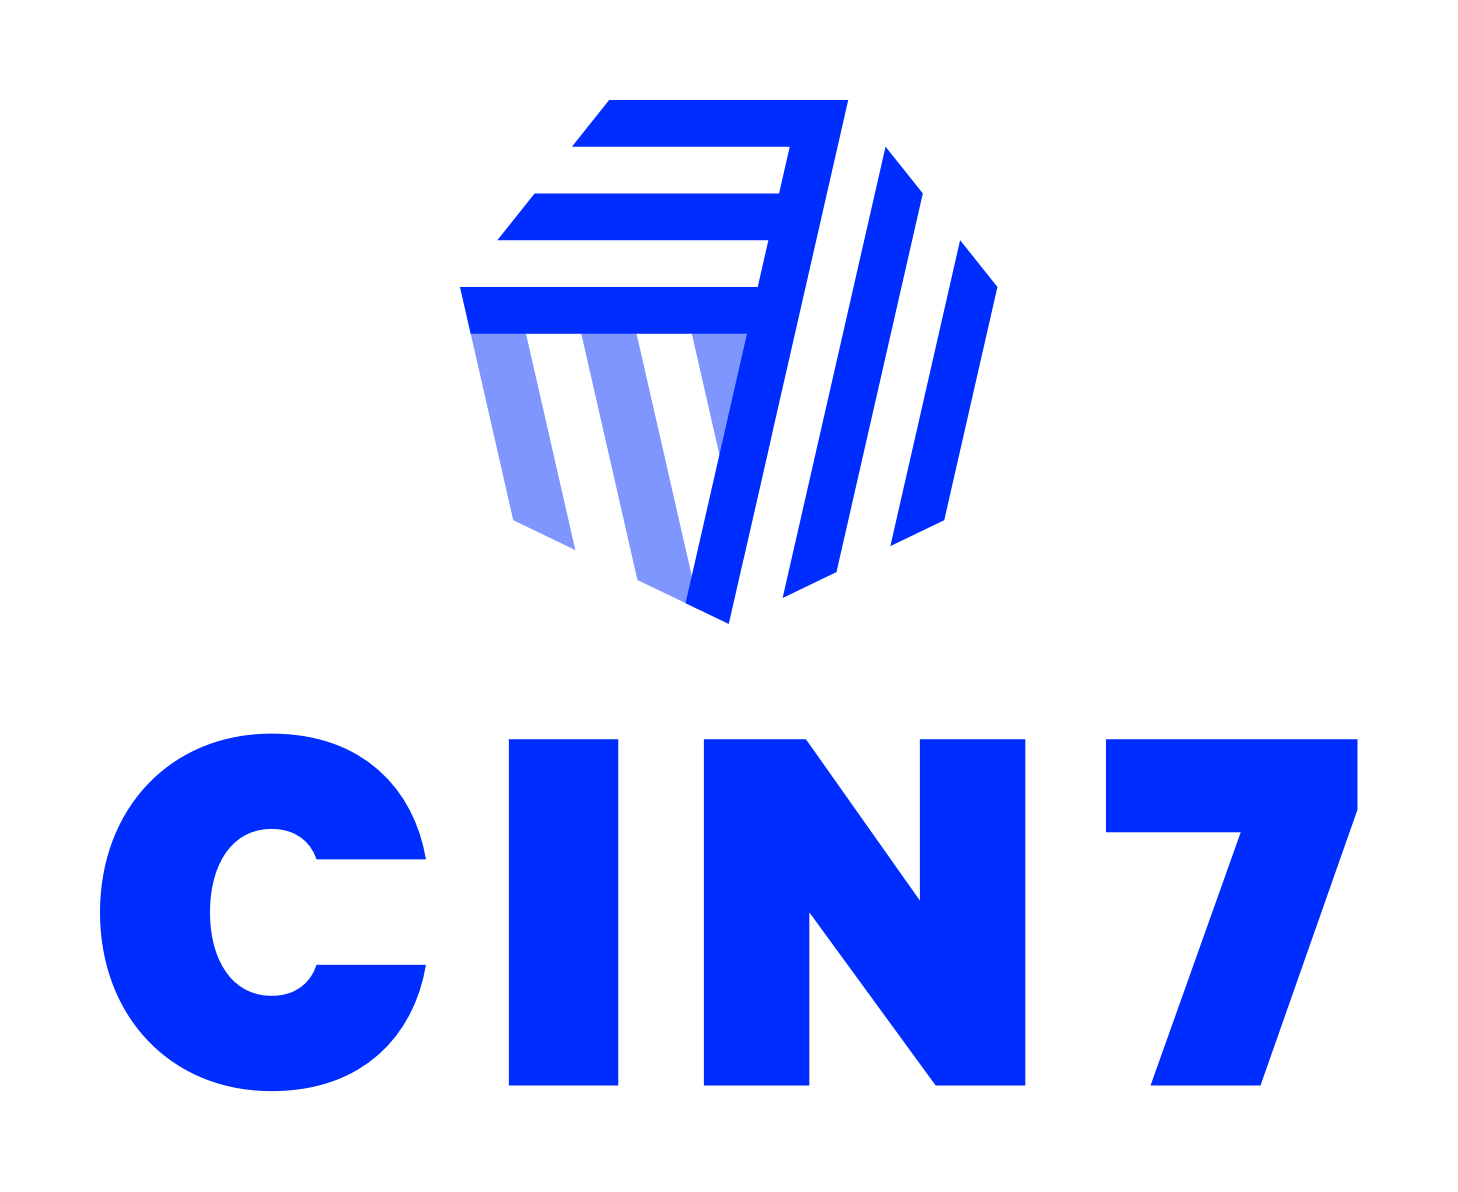 Cin7 logo 2